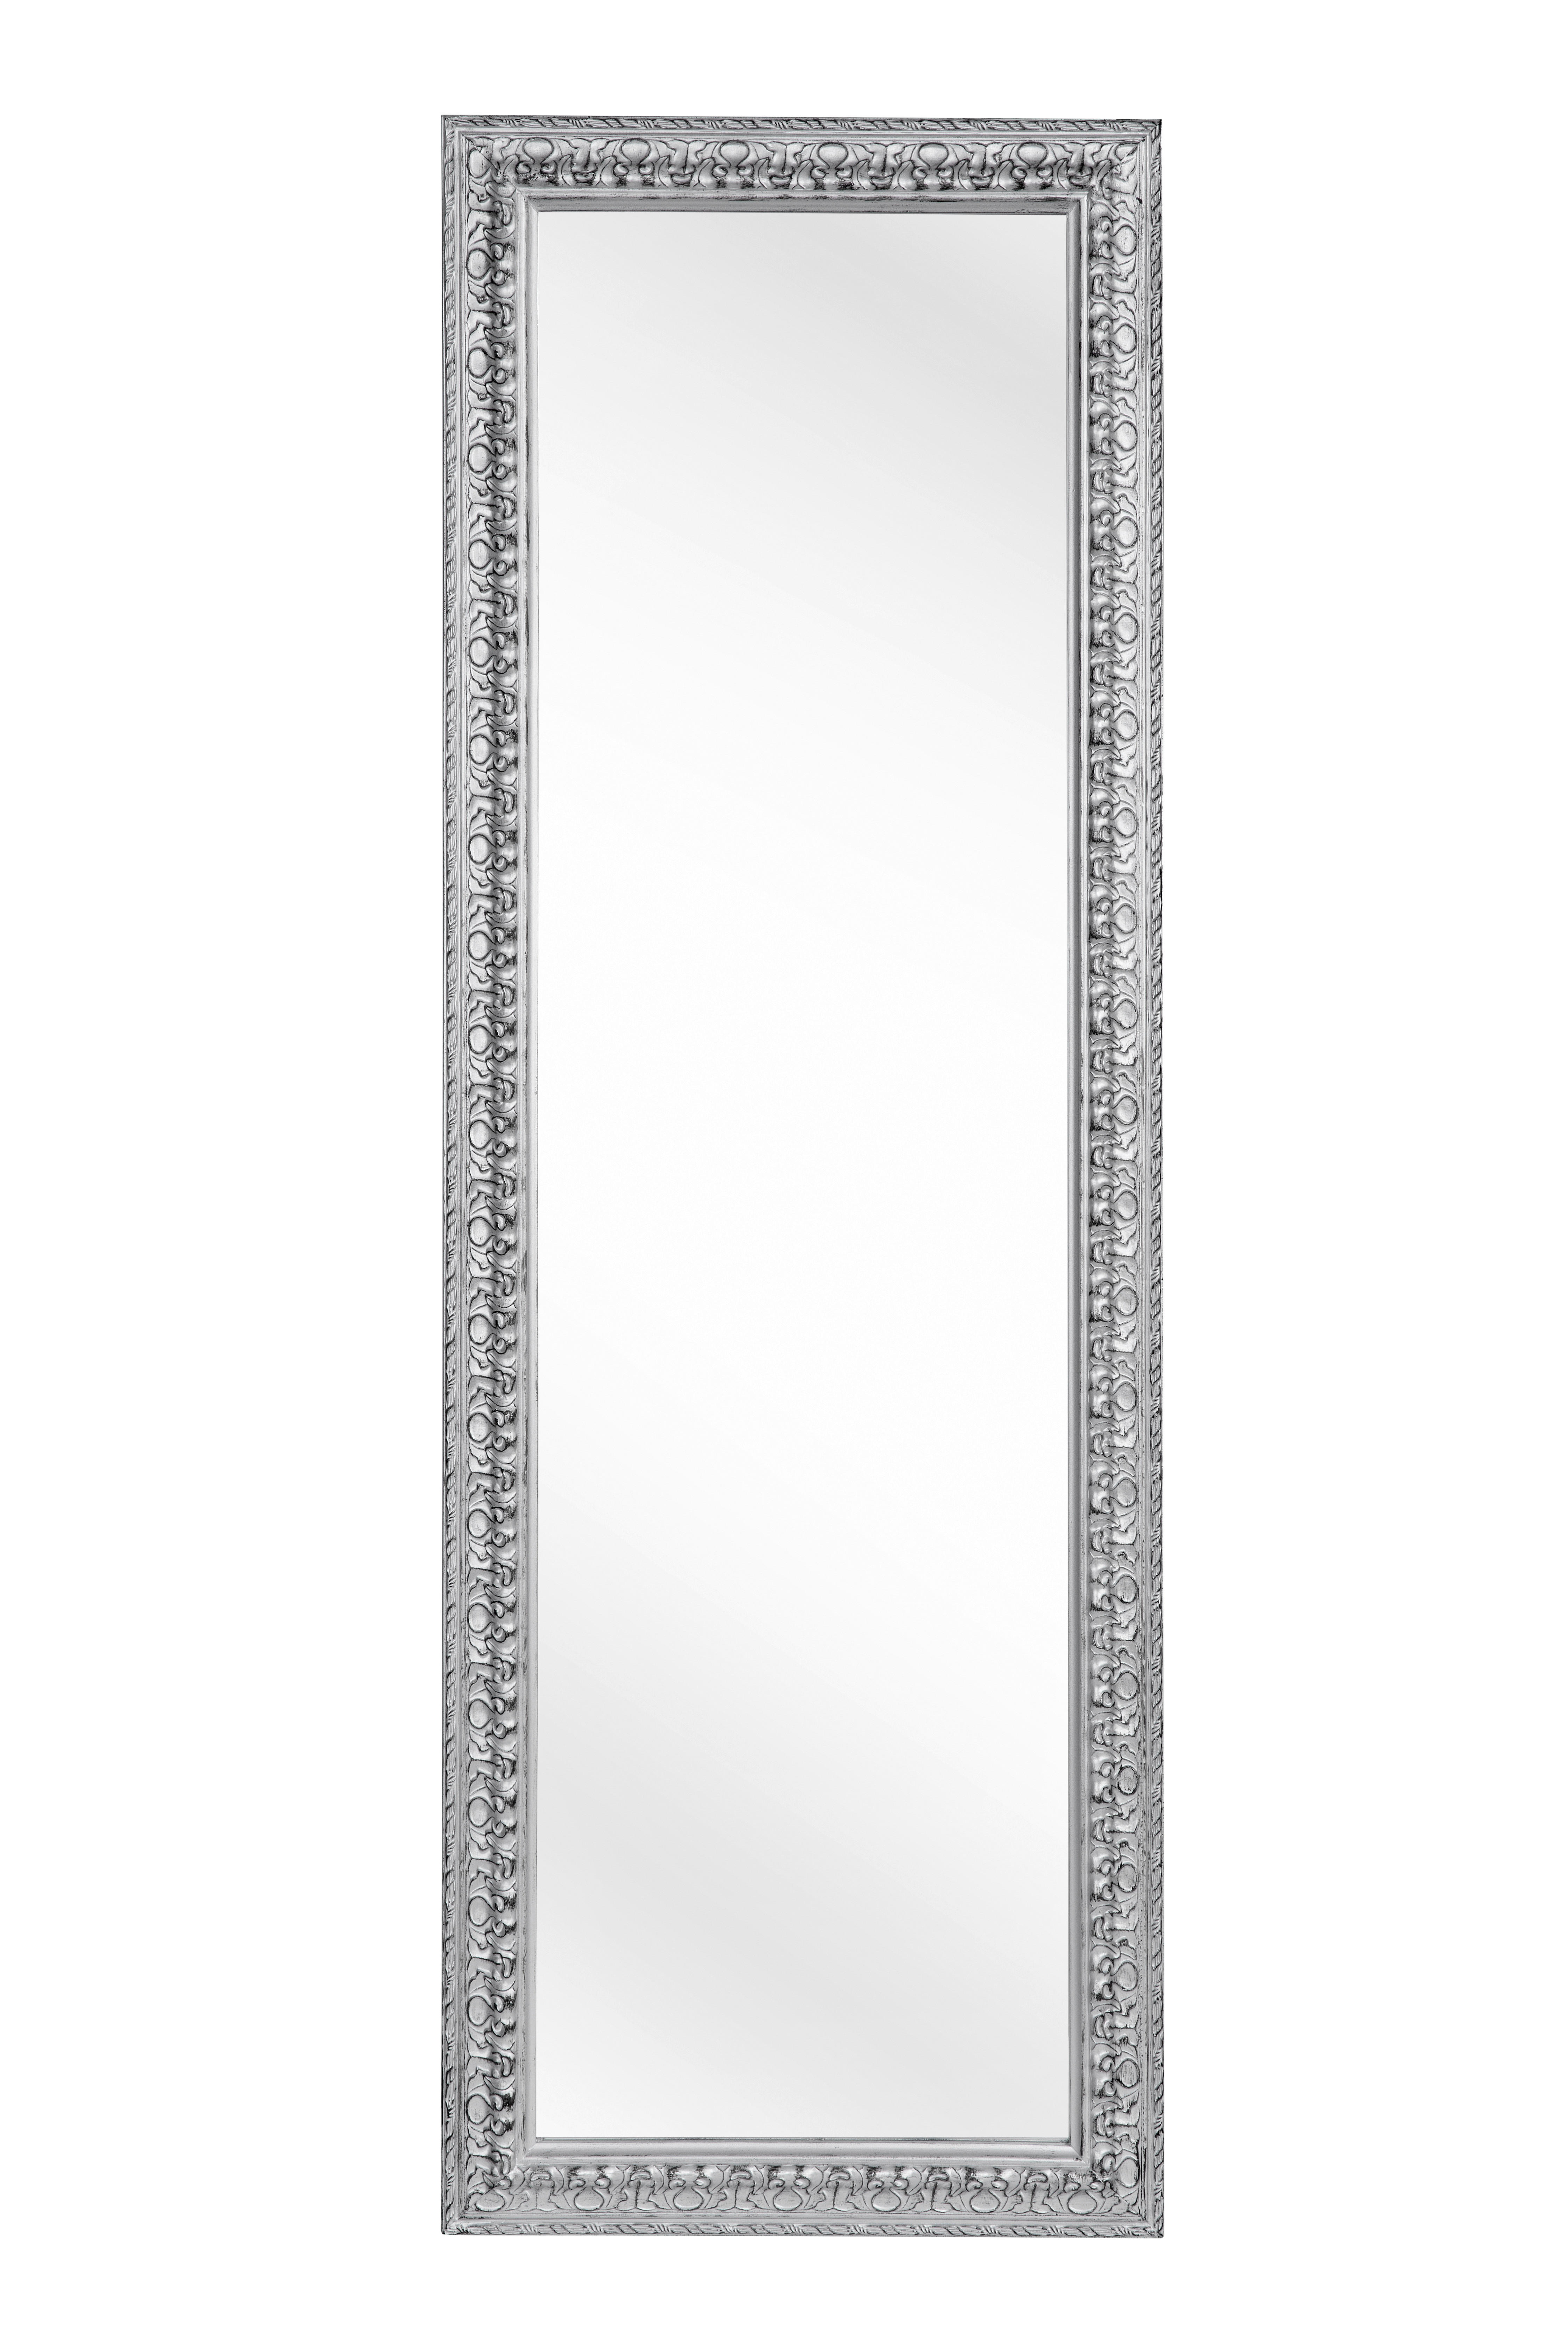 WANDSPIEGEL Silberfarben  - Silberfarben, LIFESTYLE, Glas/Holz (50/150/3cm) - Carryhome